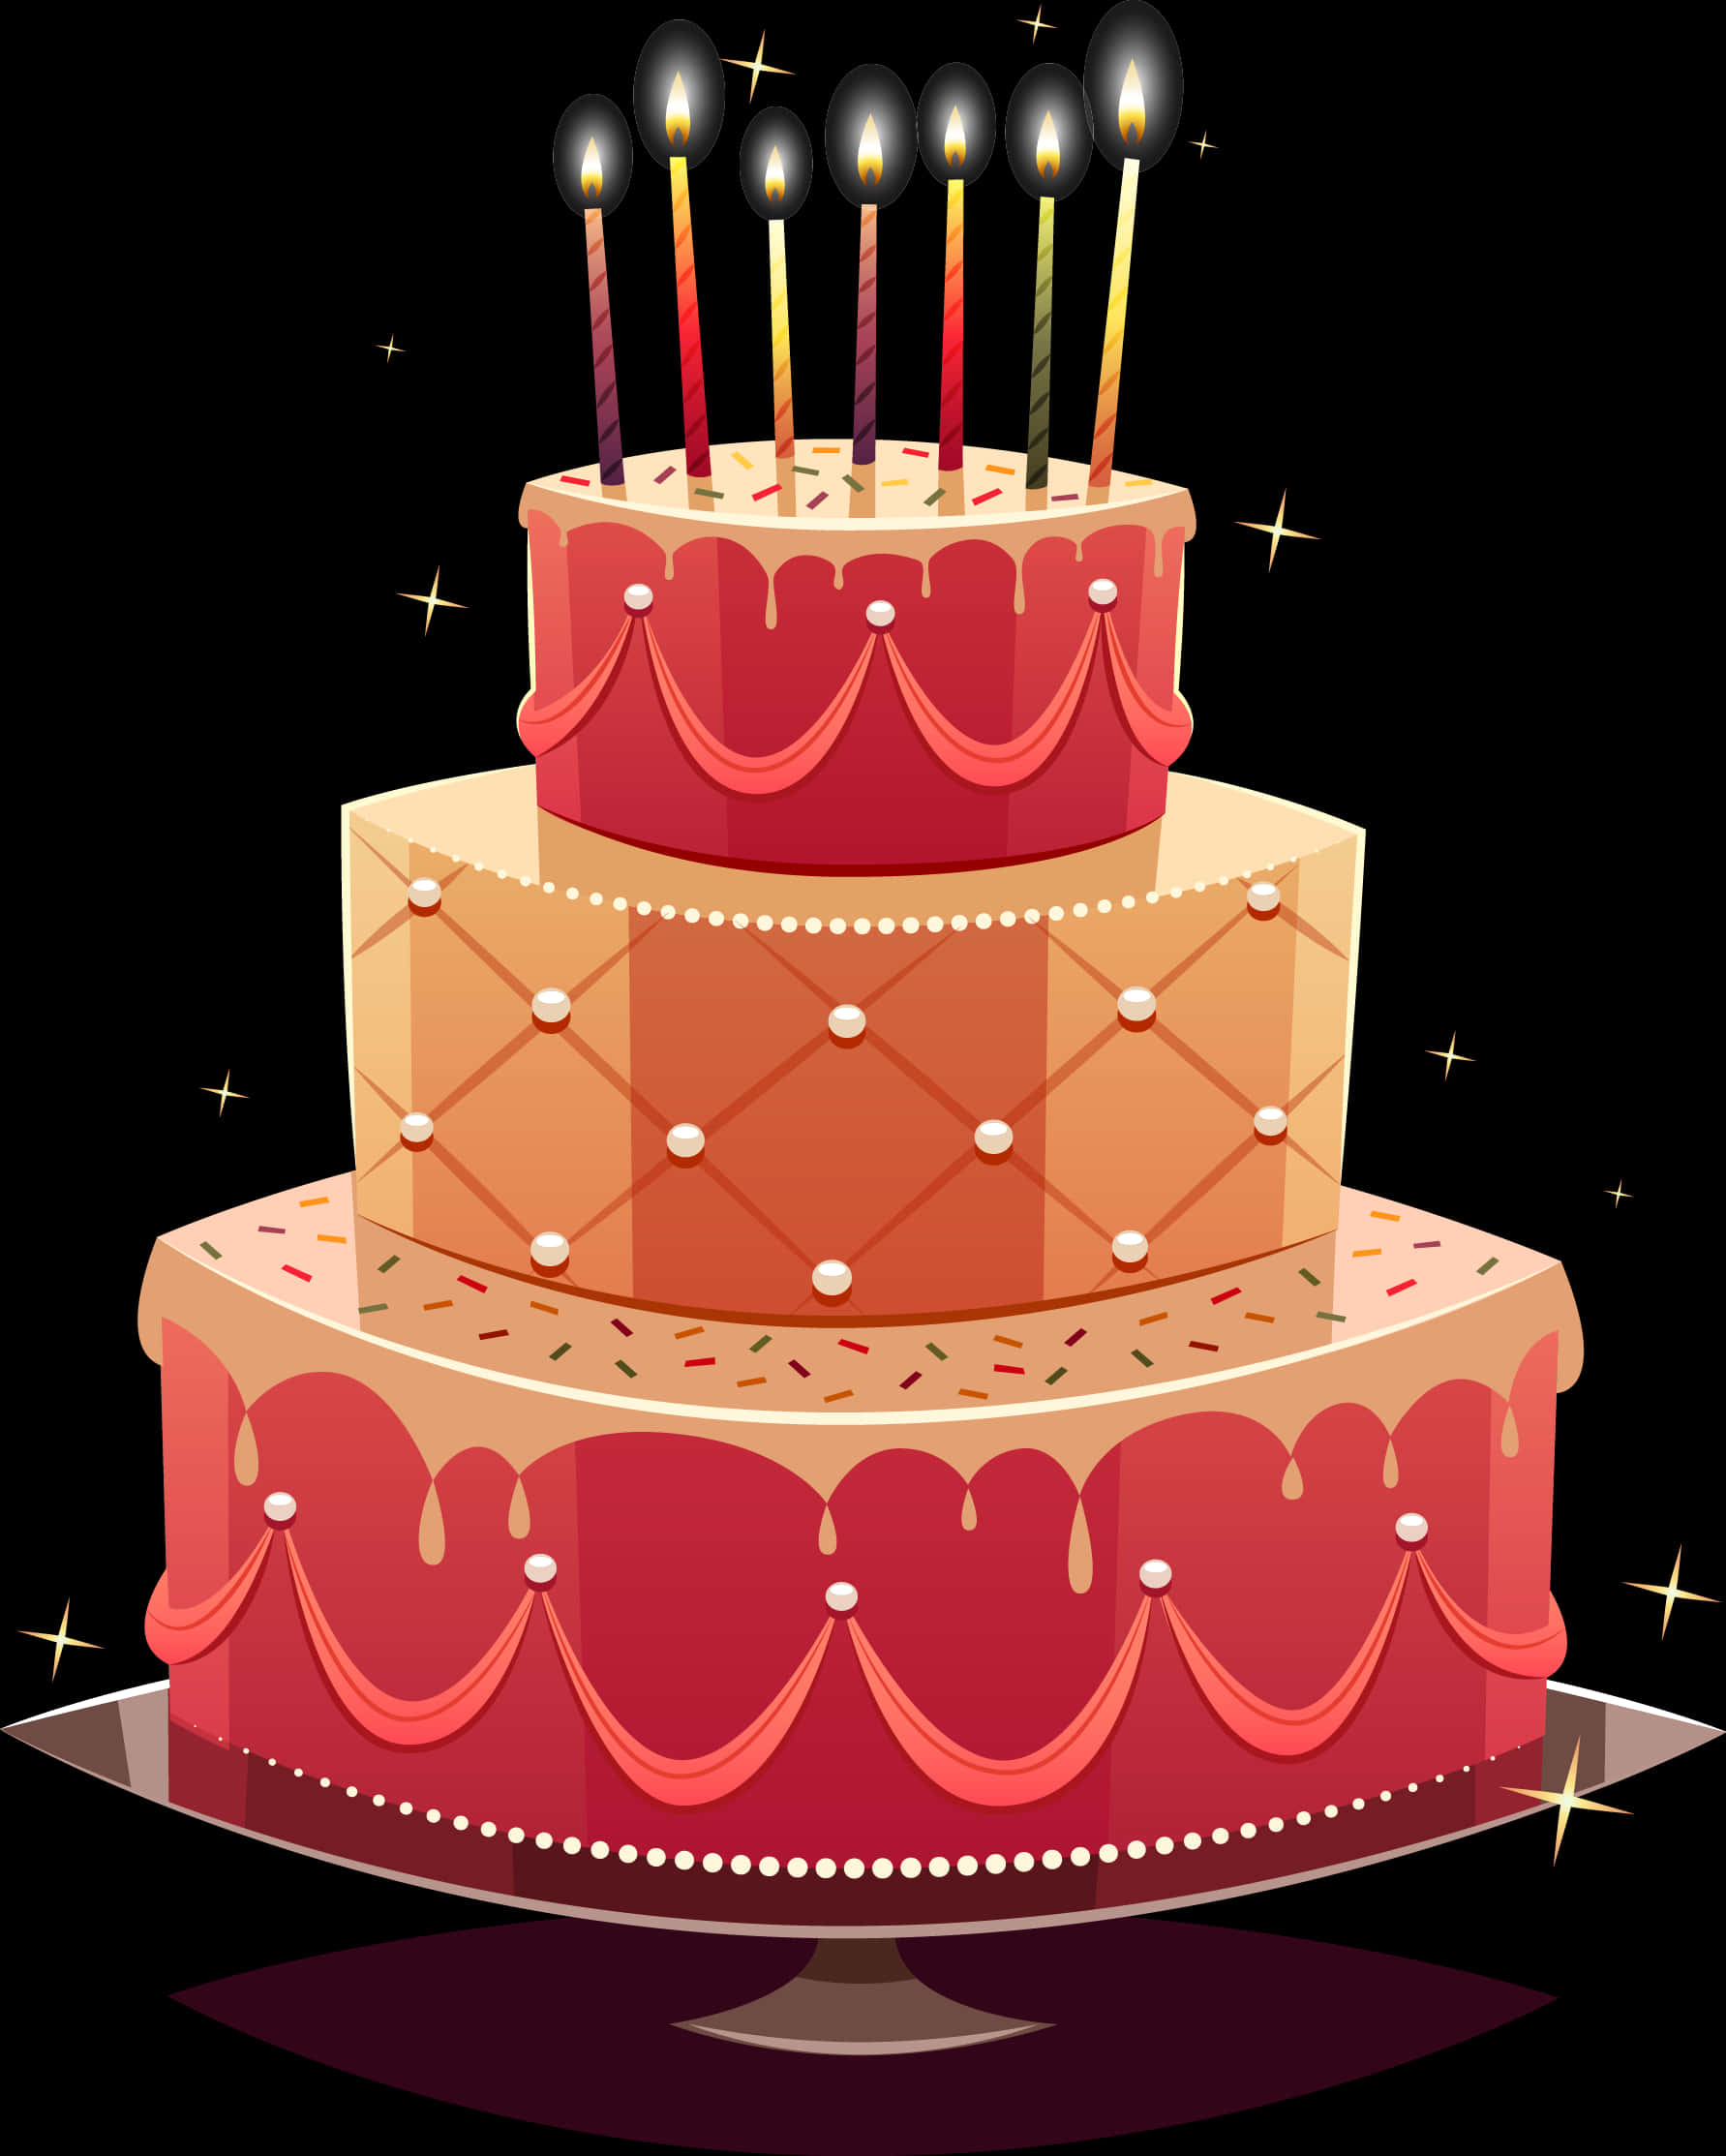 Festive Birthday Cake Illustration PNG